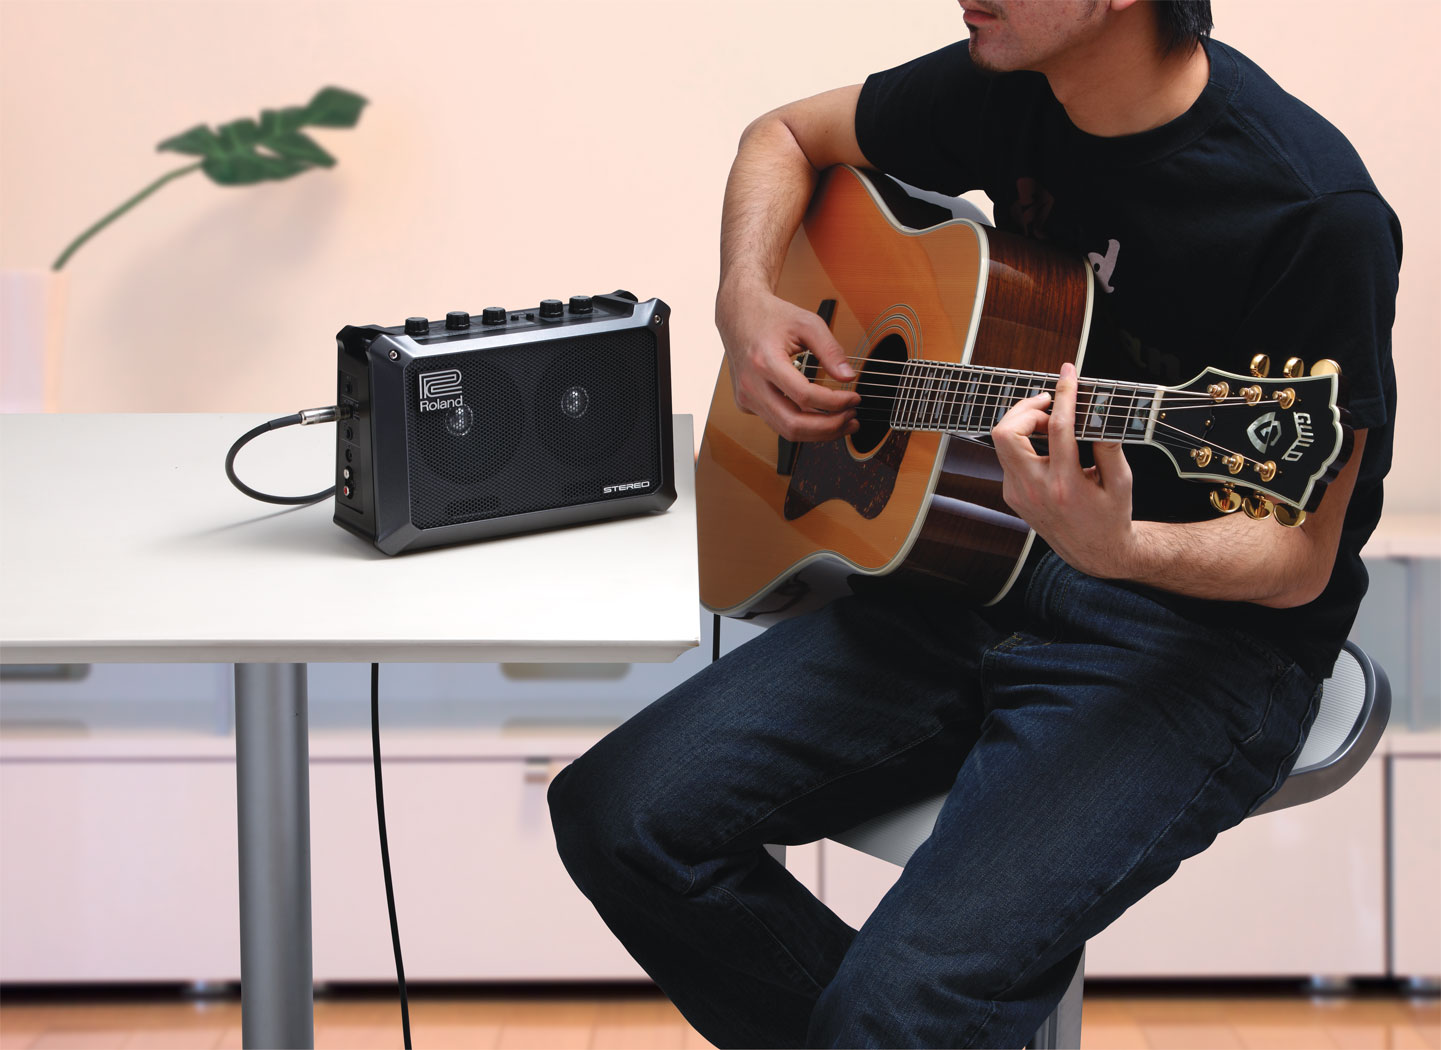 Roland Mobile Cube Battery Power Stereo Amp 2.5w 2x4 - Elektrische gitaar mini versterker - Variation 6